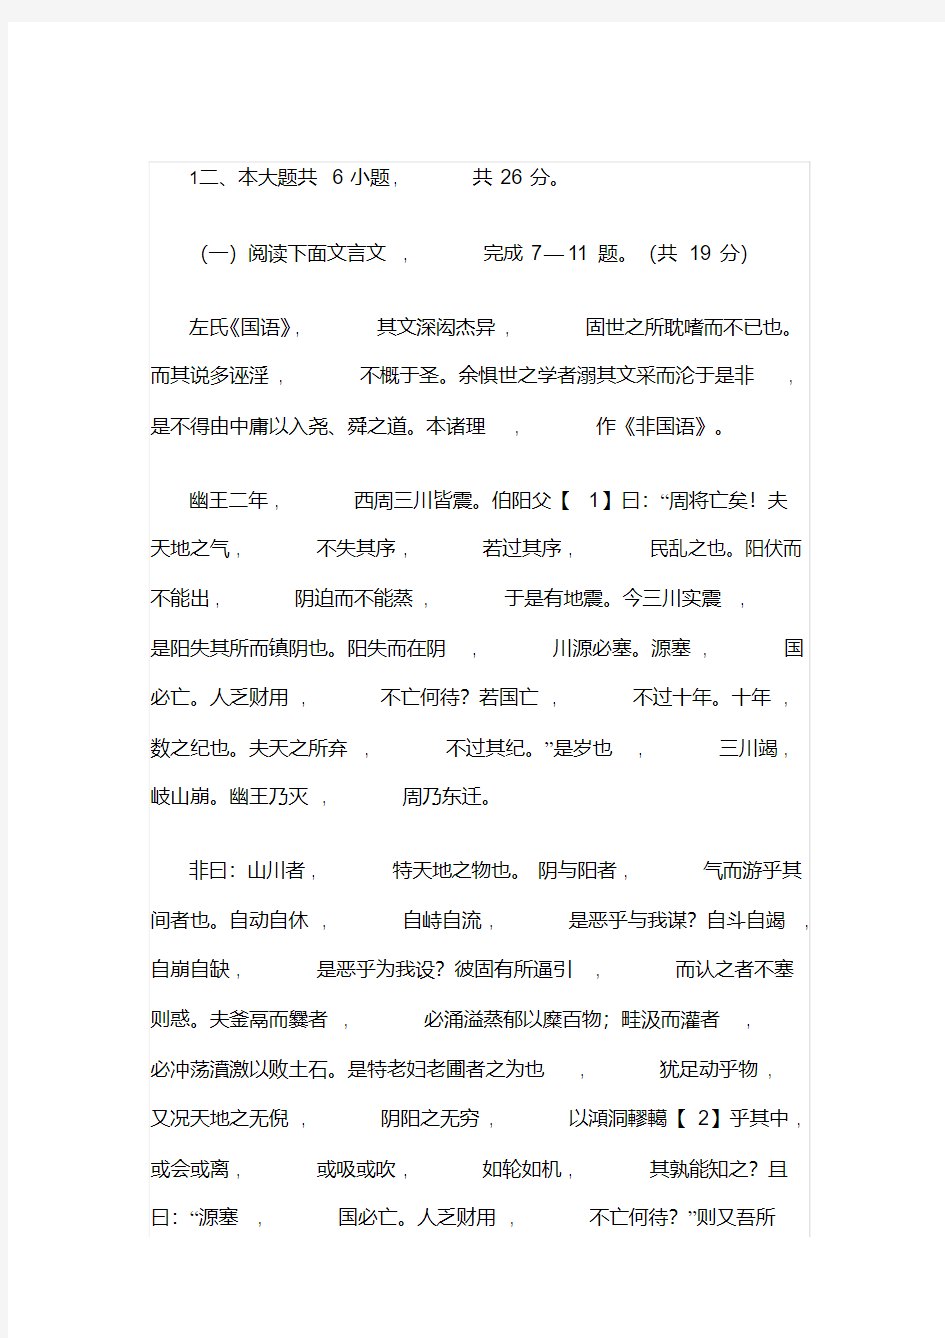 2019北京高考语文文言文答案详解(20200616221723)